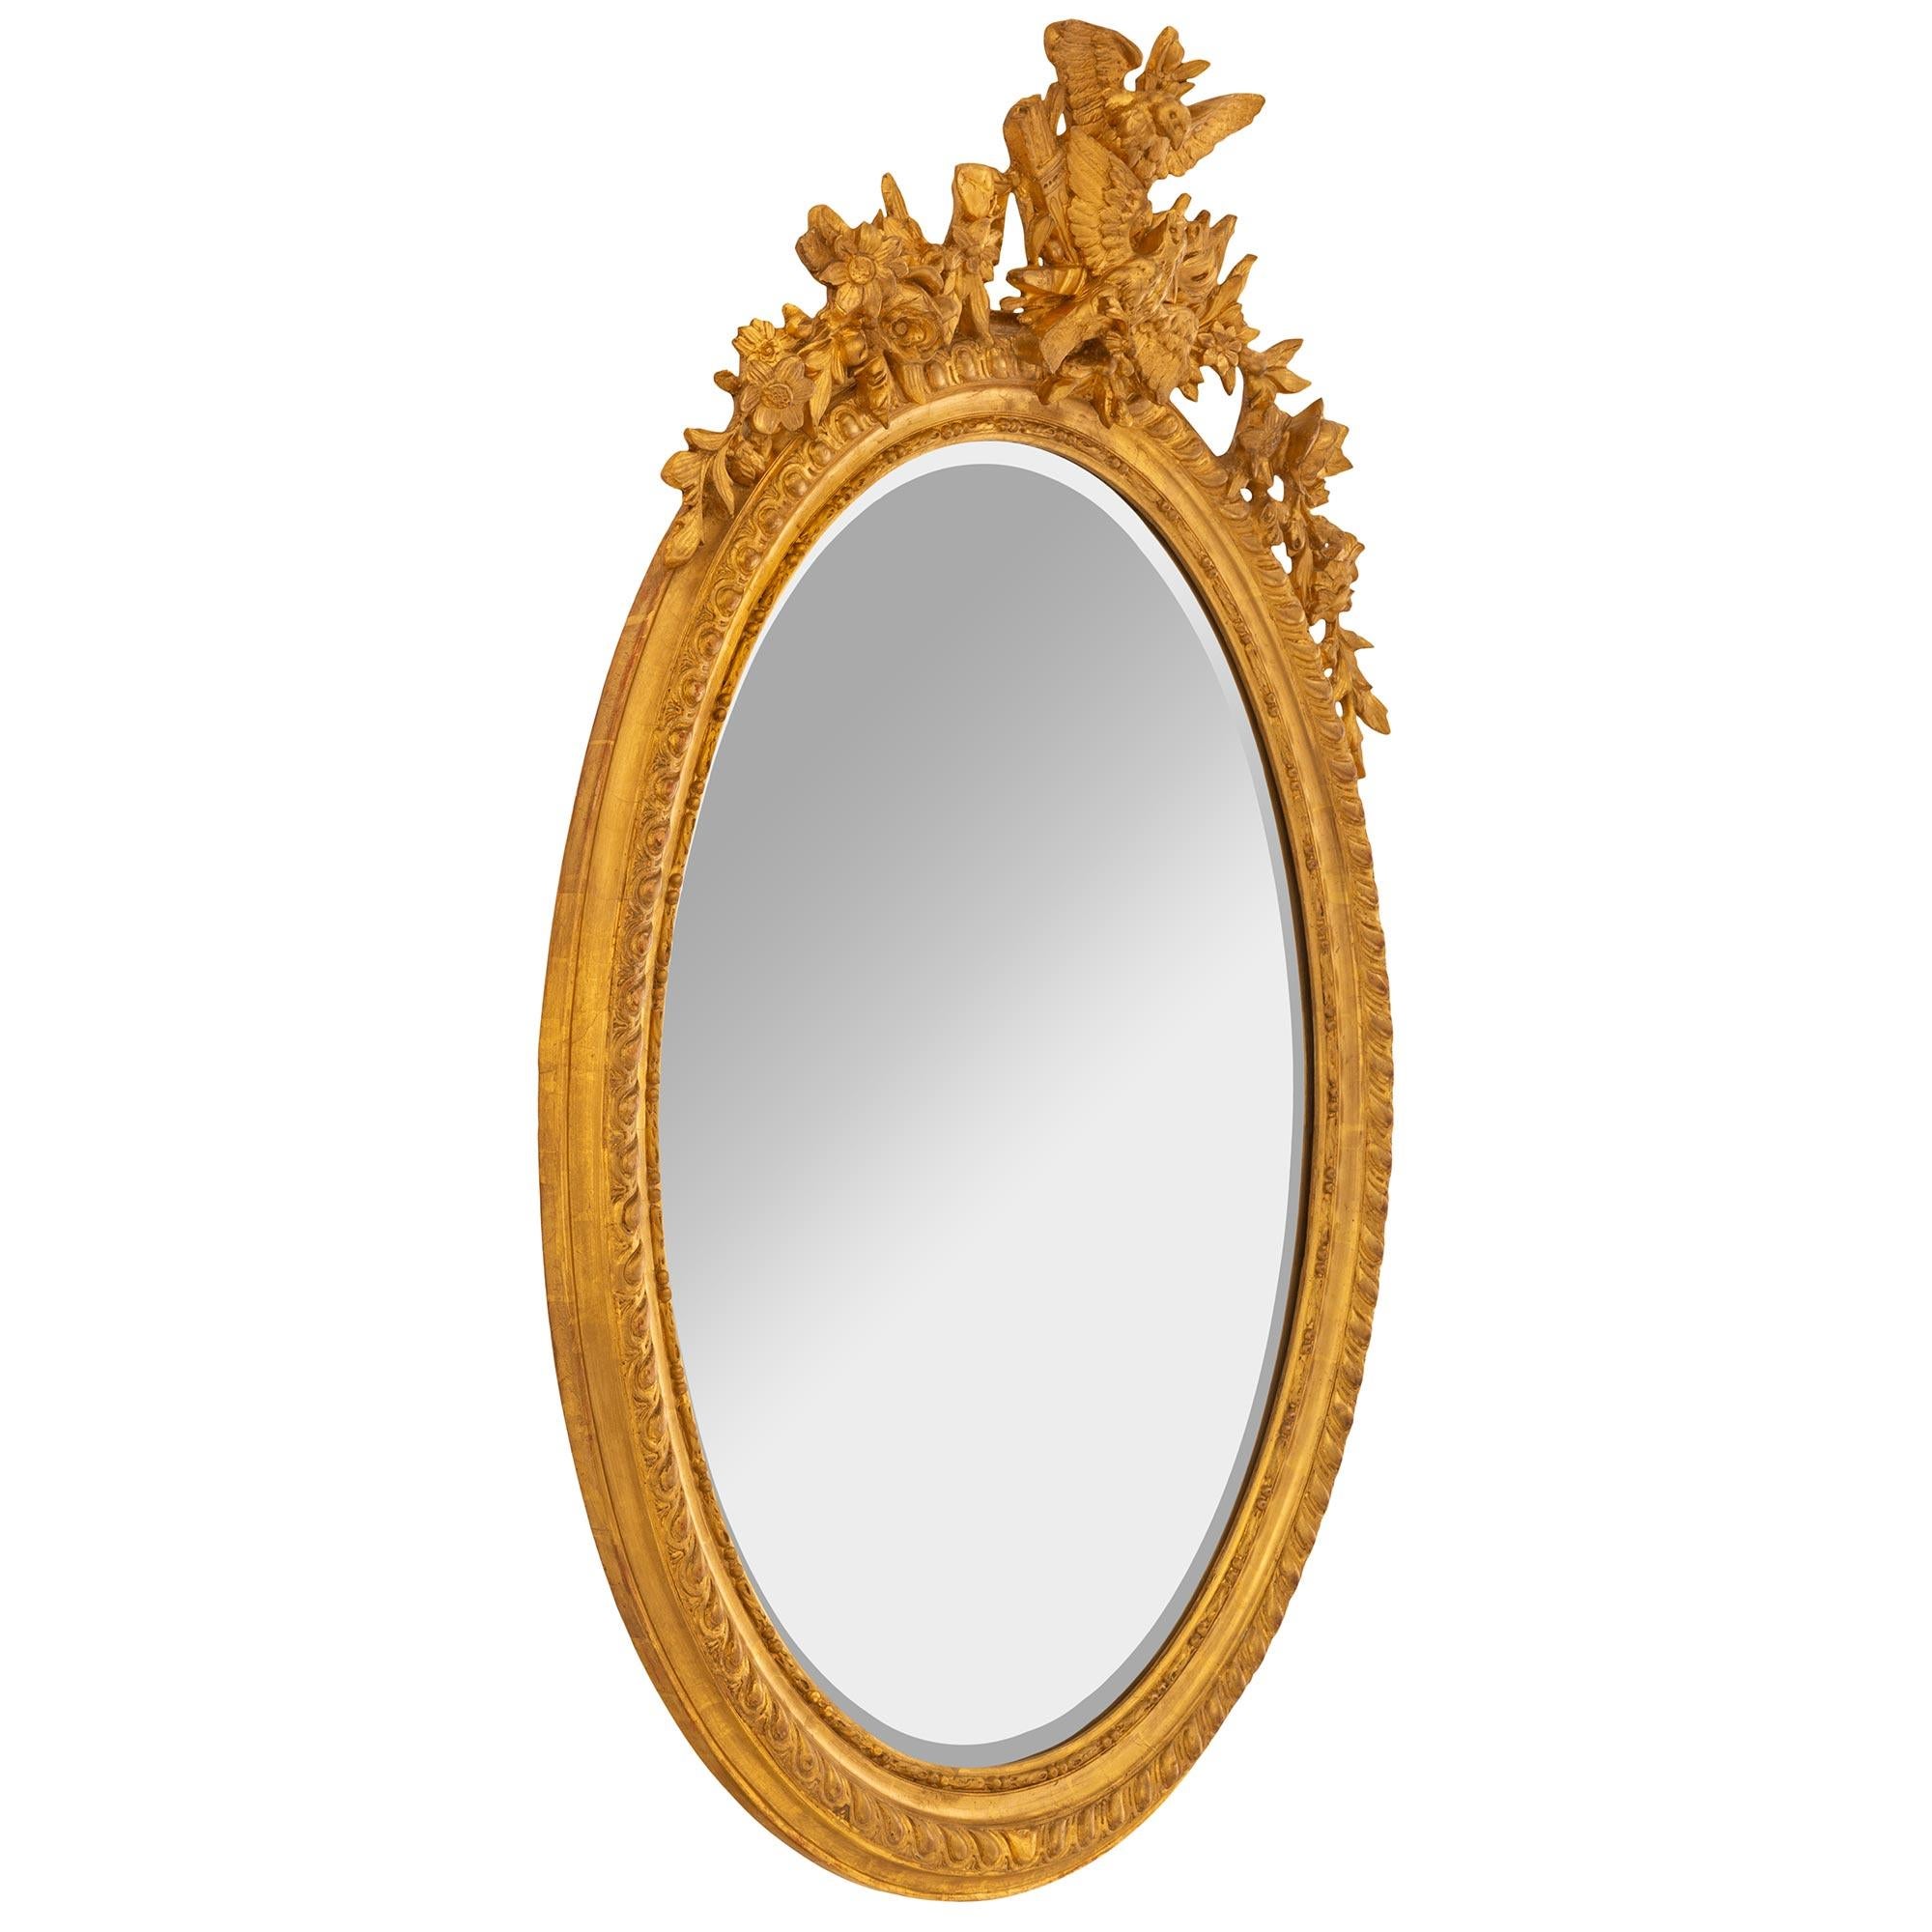 Eine sehr elegante Französisch 19. Jahrhundert Louis XVI st. oval Giltwood Spiegel. Die Spiegelplatte ist von einer schönen, perlenbesetzten, gesprenkelten Bordüre umrahmt. Am Rand befindet sich ein feines, gedrehtes Gadroon-Muster, das sich durch